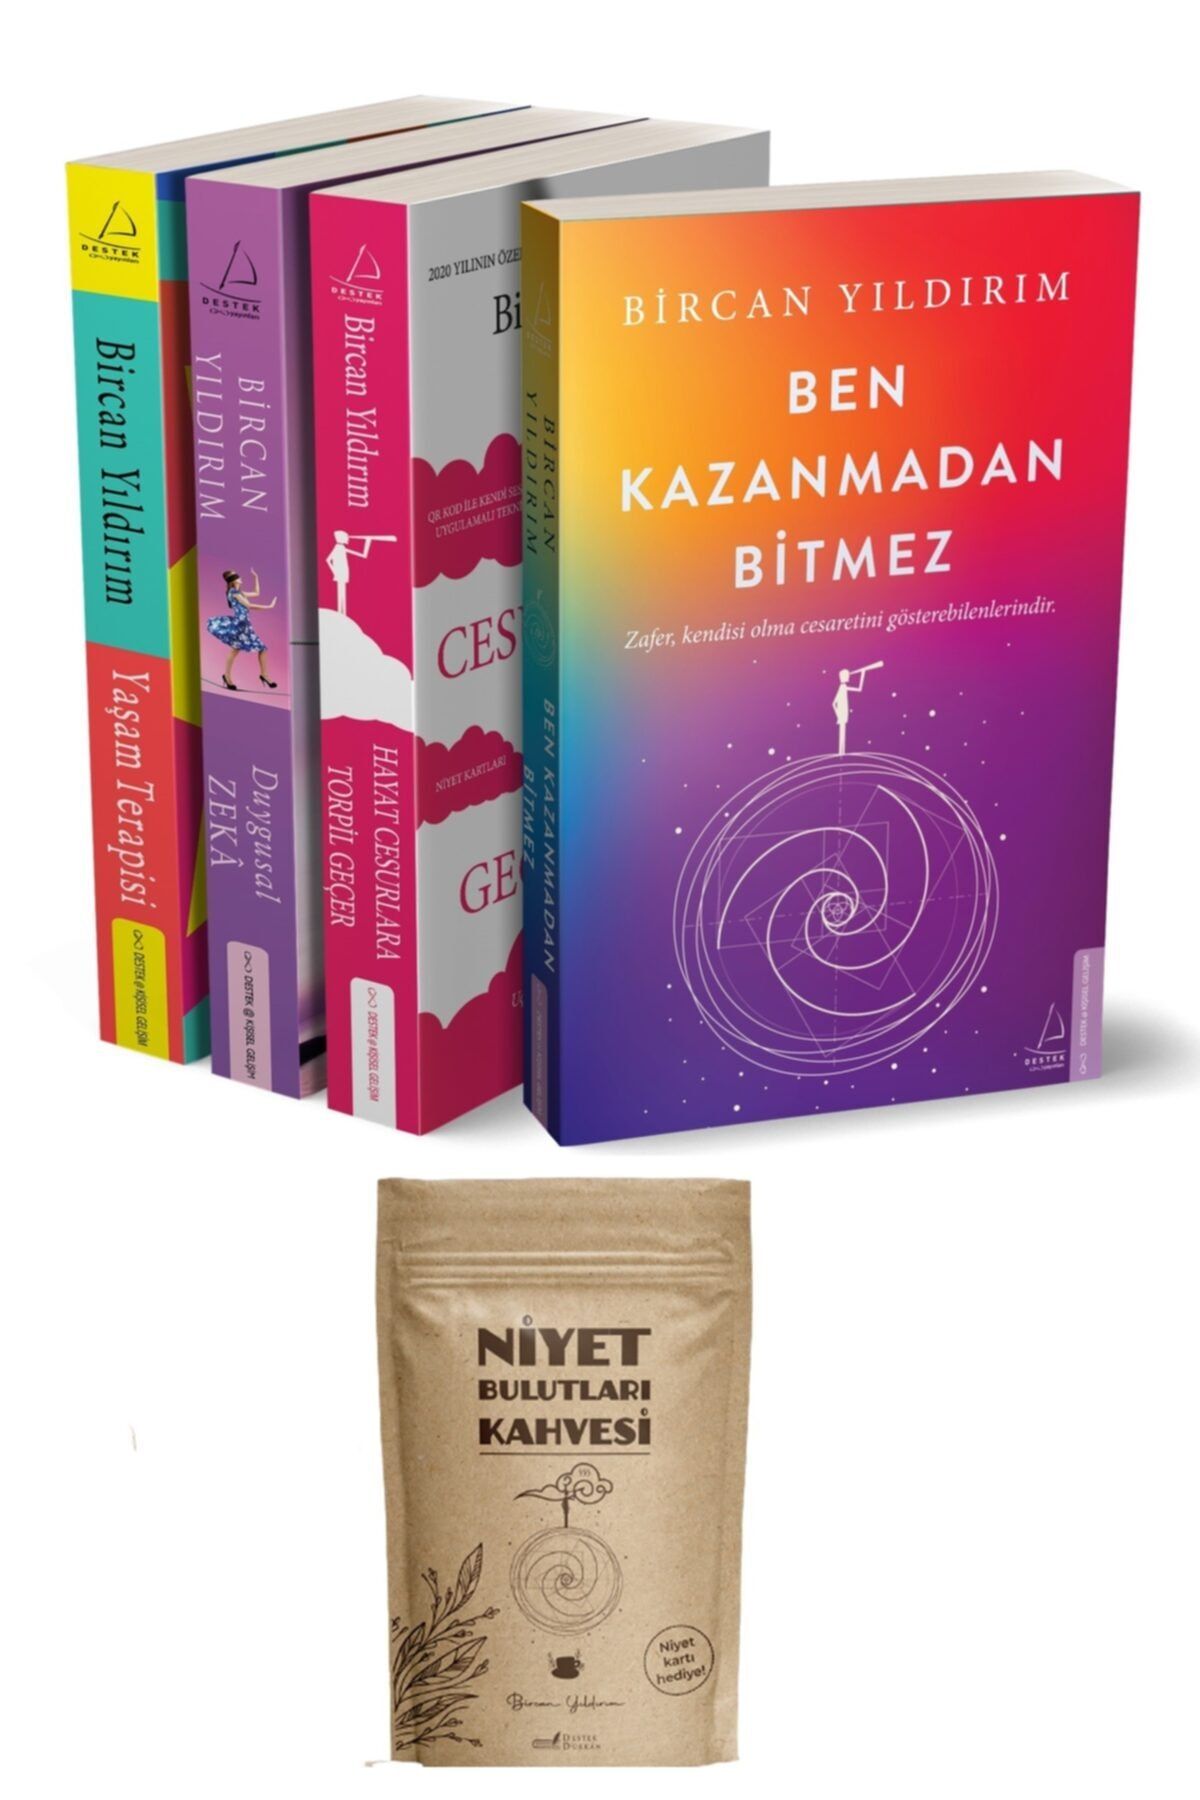 Destek Yayınları Bircan Yıldırım Set + Niyet Kahvesi